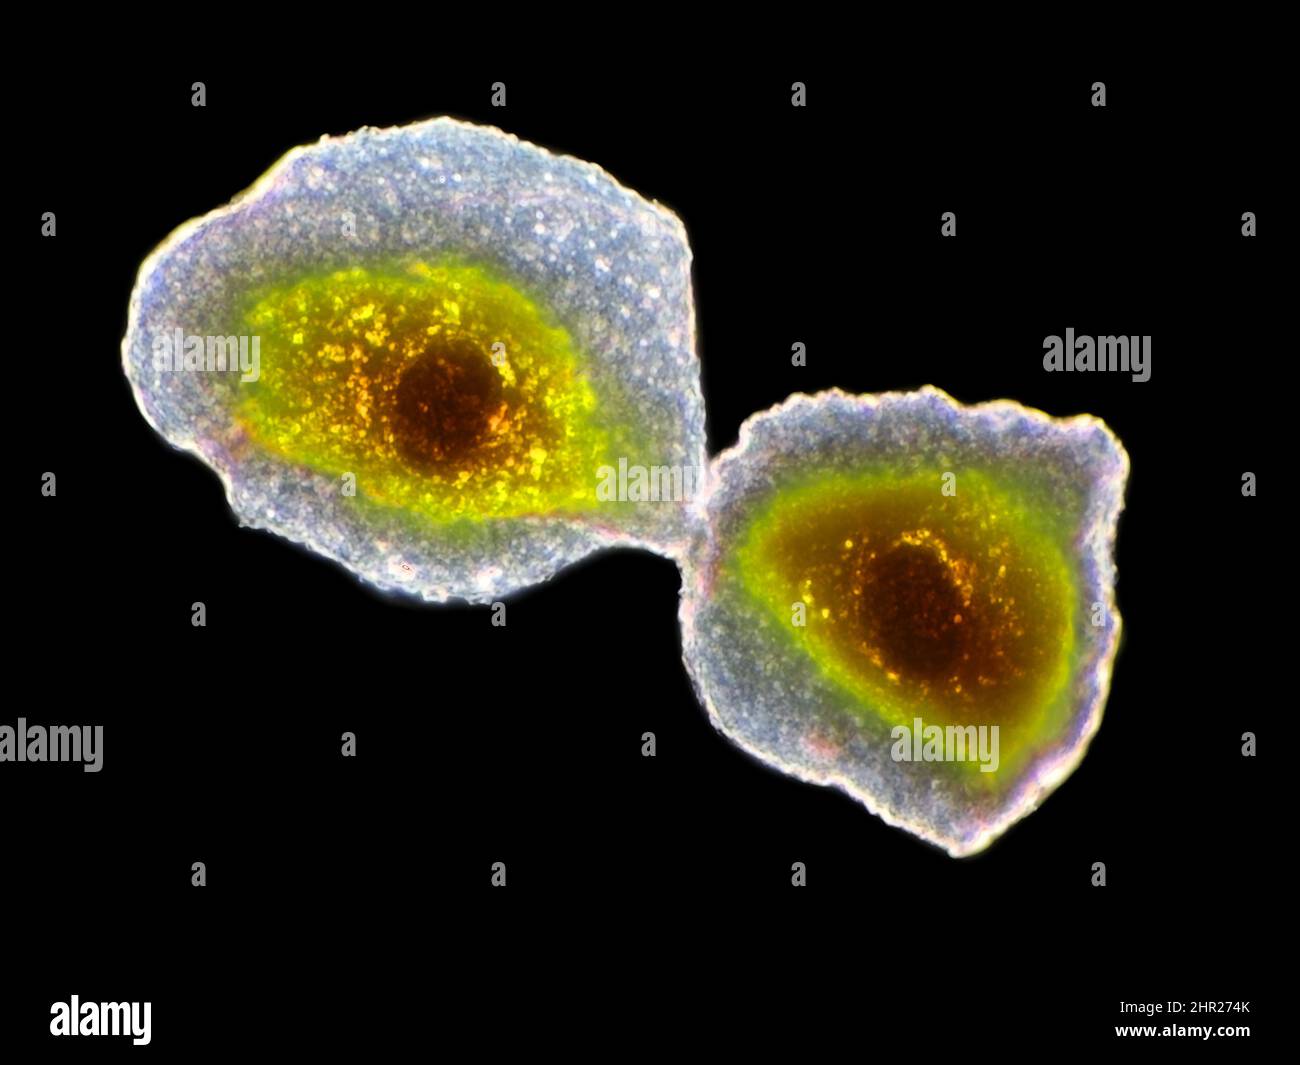 Cellules épithéliales des joues humaines sous le microscope, le champ de vision horizontal est d'environ 125 micromètres Banque D'Images